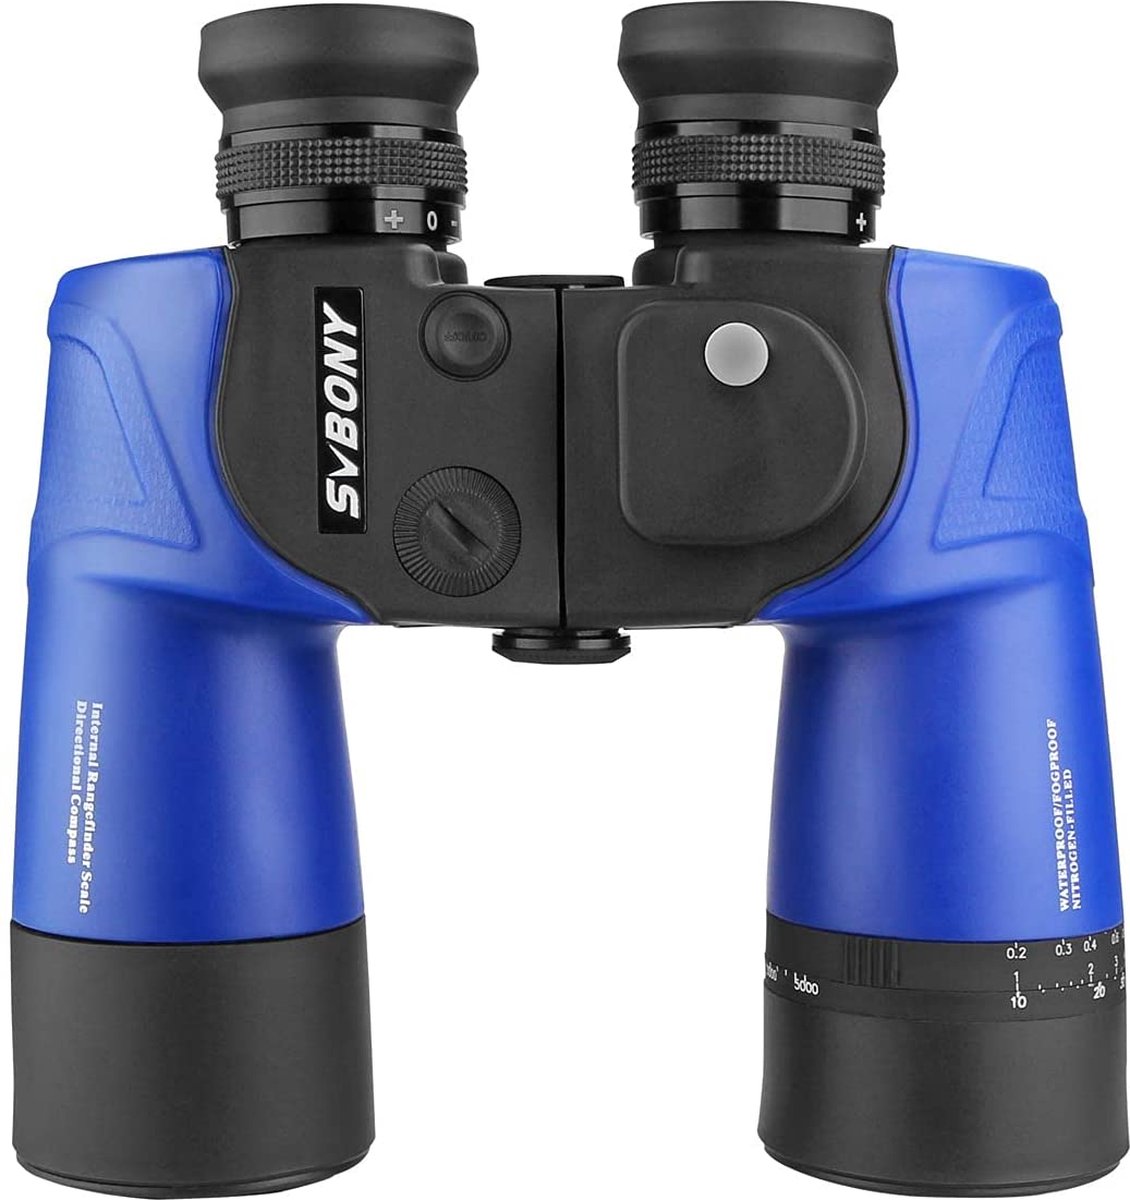 Svbony - SA201 verrekijker - 7x50 - HD waterdicht kompas - Afstandsmeter verrekijker - Voor volwassenen - Bak4 Prism FMC - lensverrekijker - Voor navigatie - Varen - Jagen - Vogels kijken